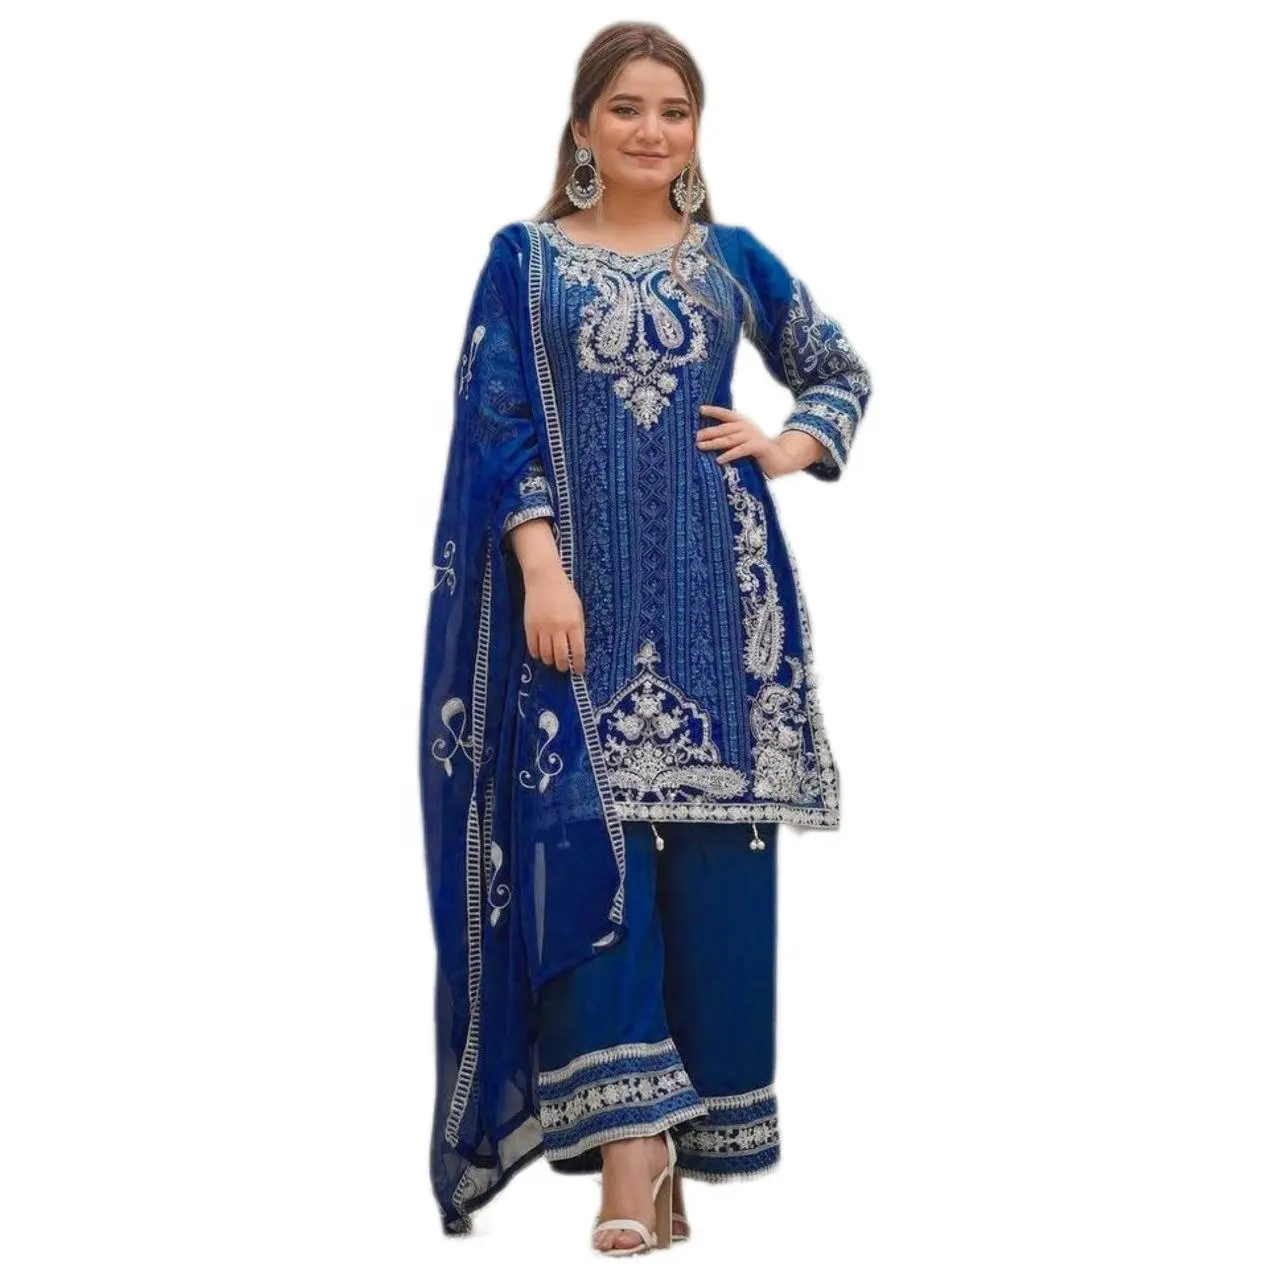 Nova coleção de ternos falsos Salwar bordados Georgette Surat por Fatema Fashion